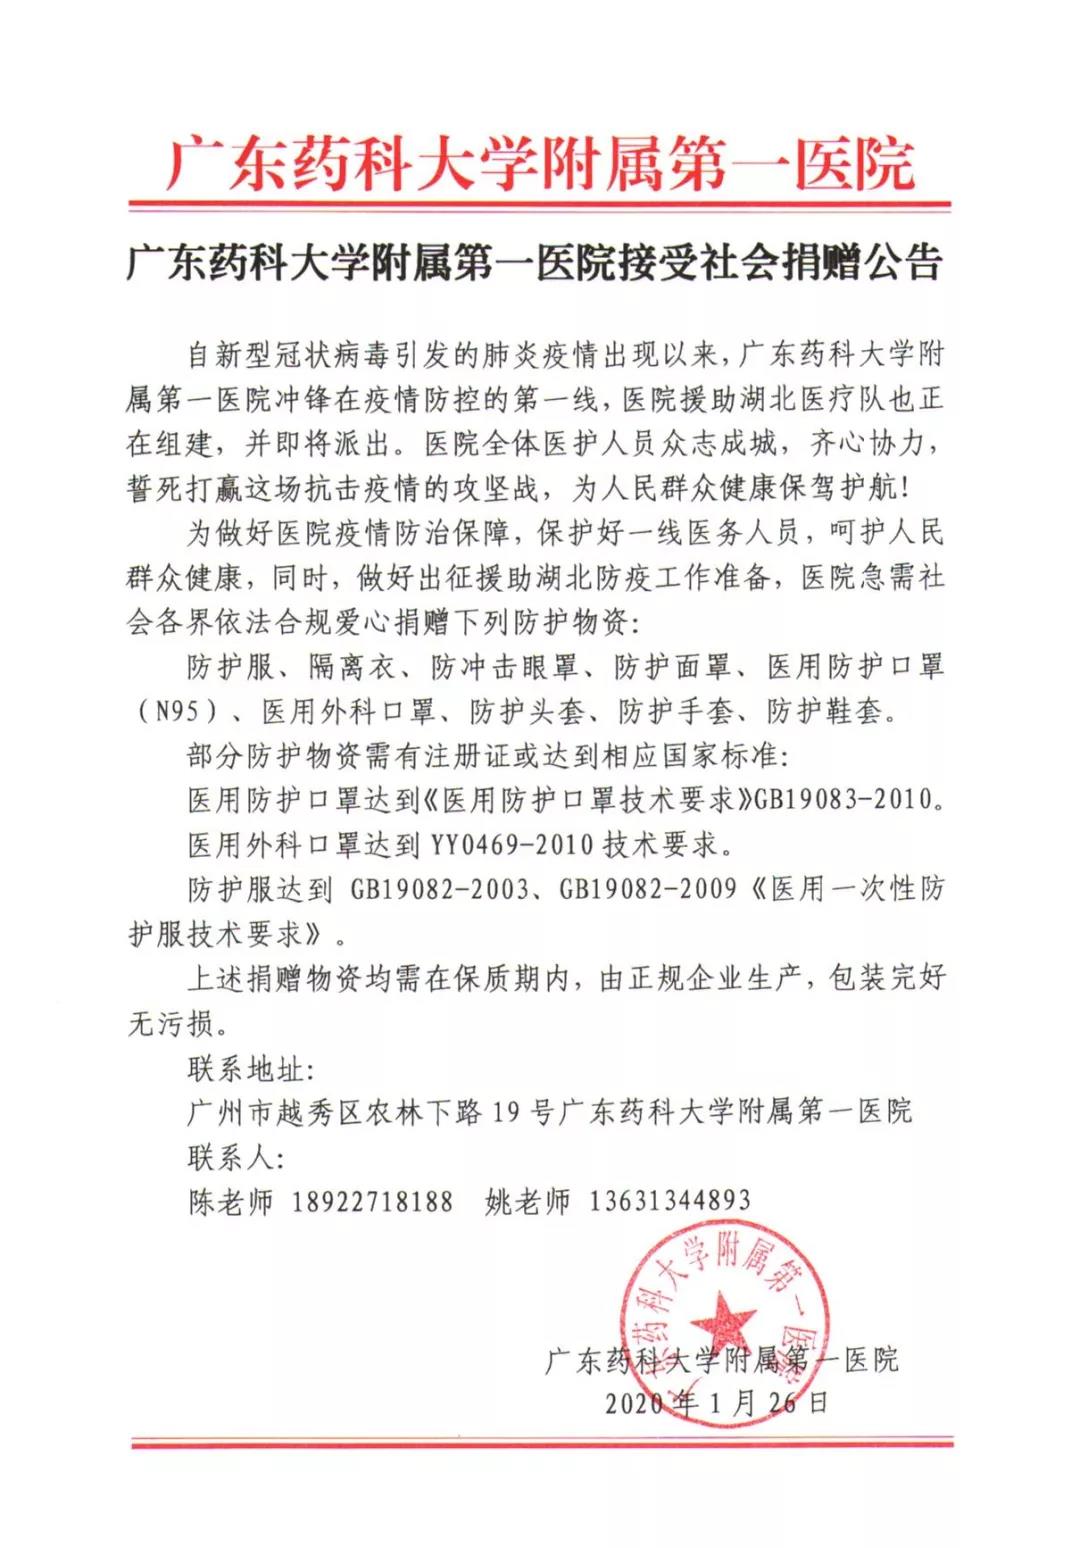 广东药科大学附属第一医院接受社会捐赠公告